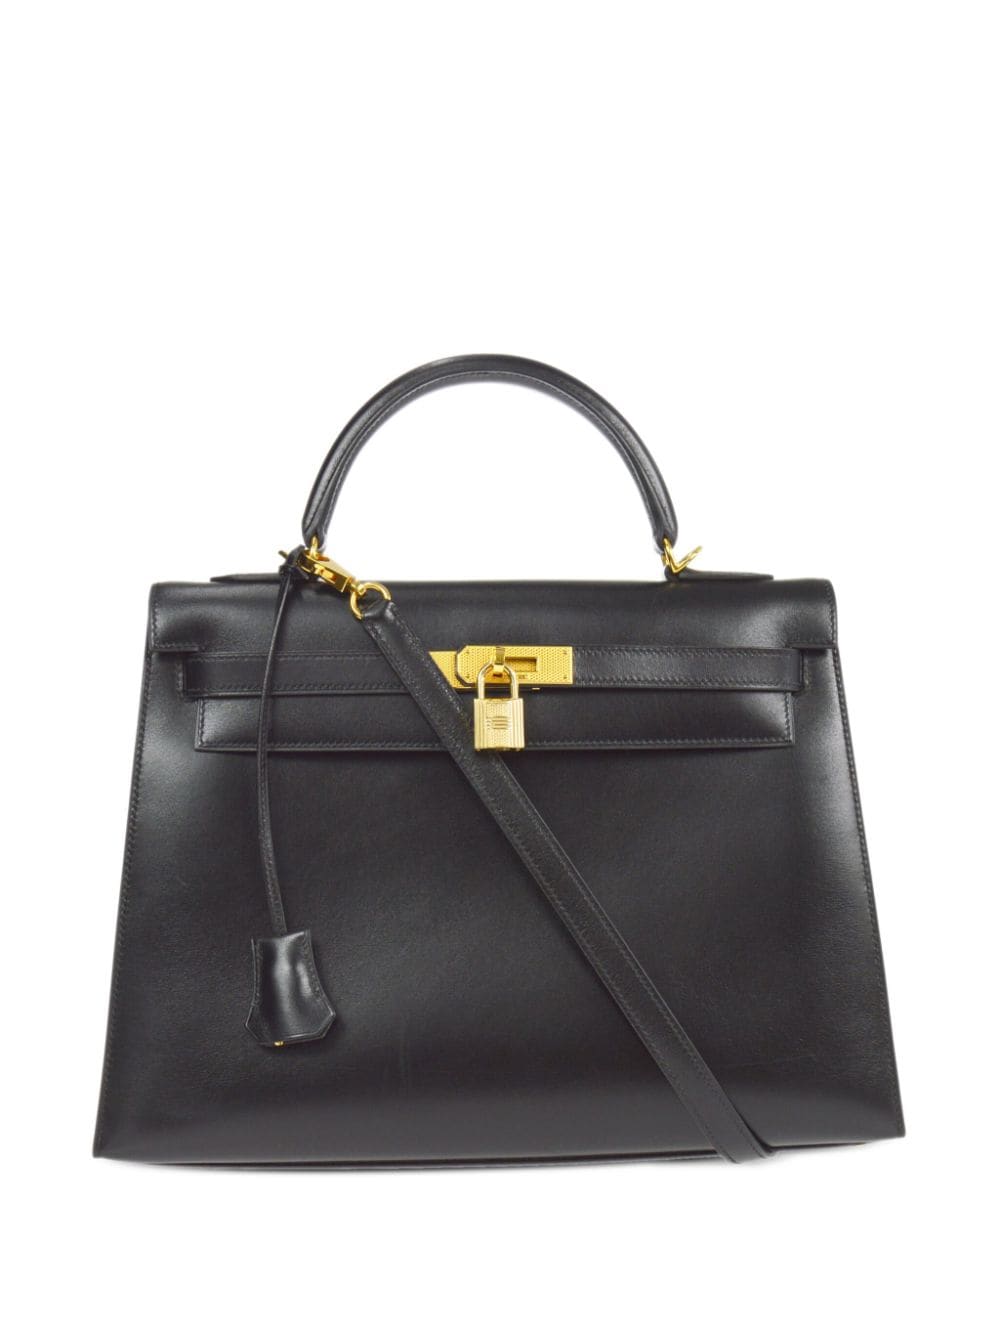 Hermès Pre-Owned 2004 Kelly 32 Sellier two-way handbag - Black von Hermès Pre-Owned